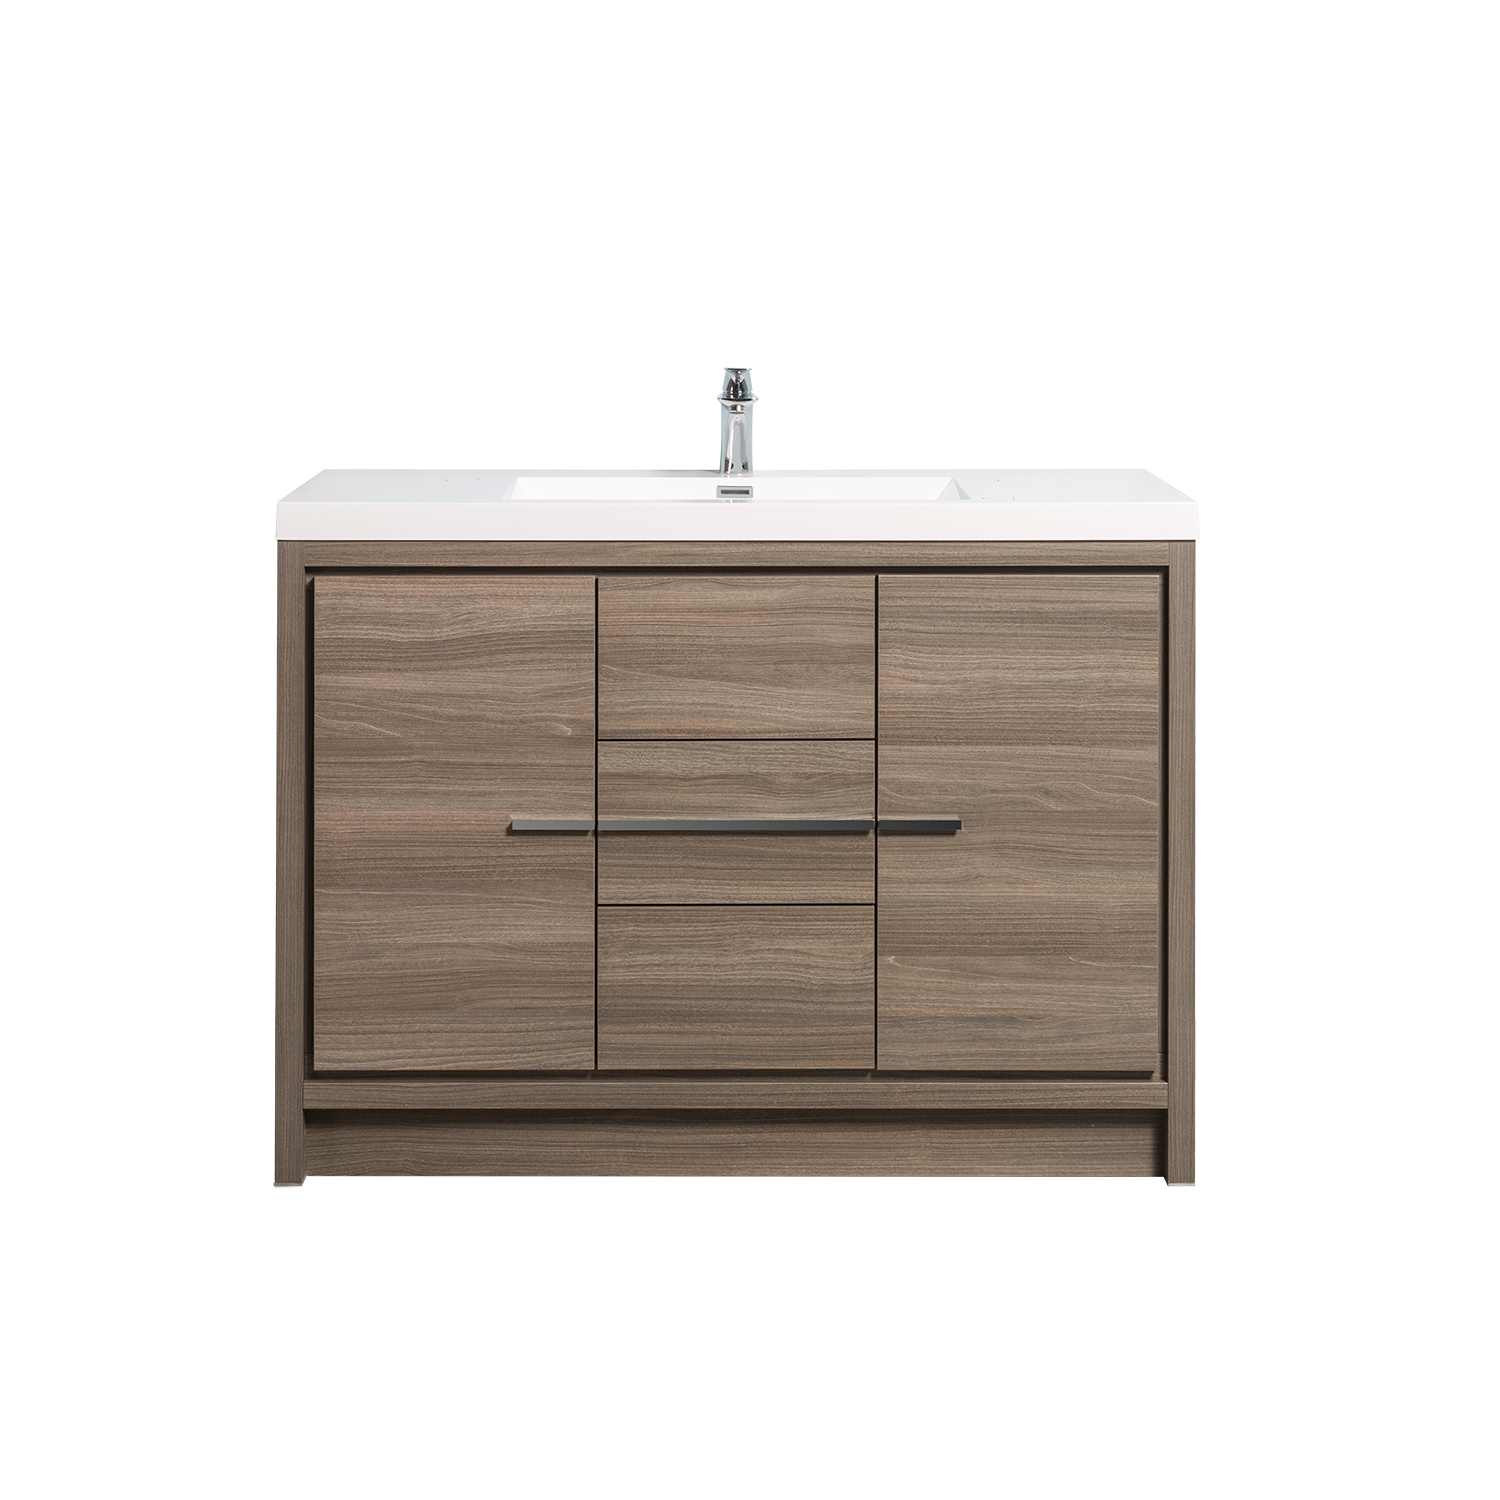 Duko Allier 48 48" Rectangular Sink Bathroom Vanity Cabinet